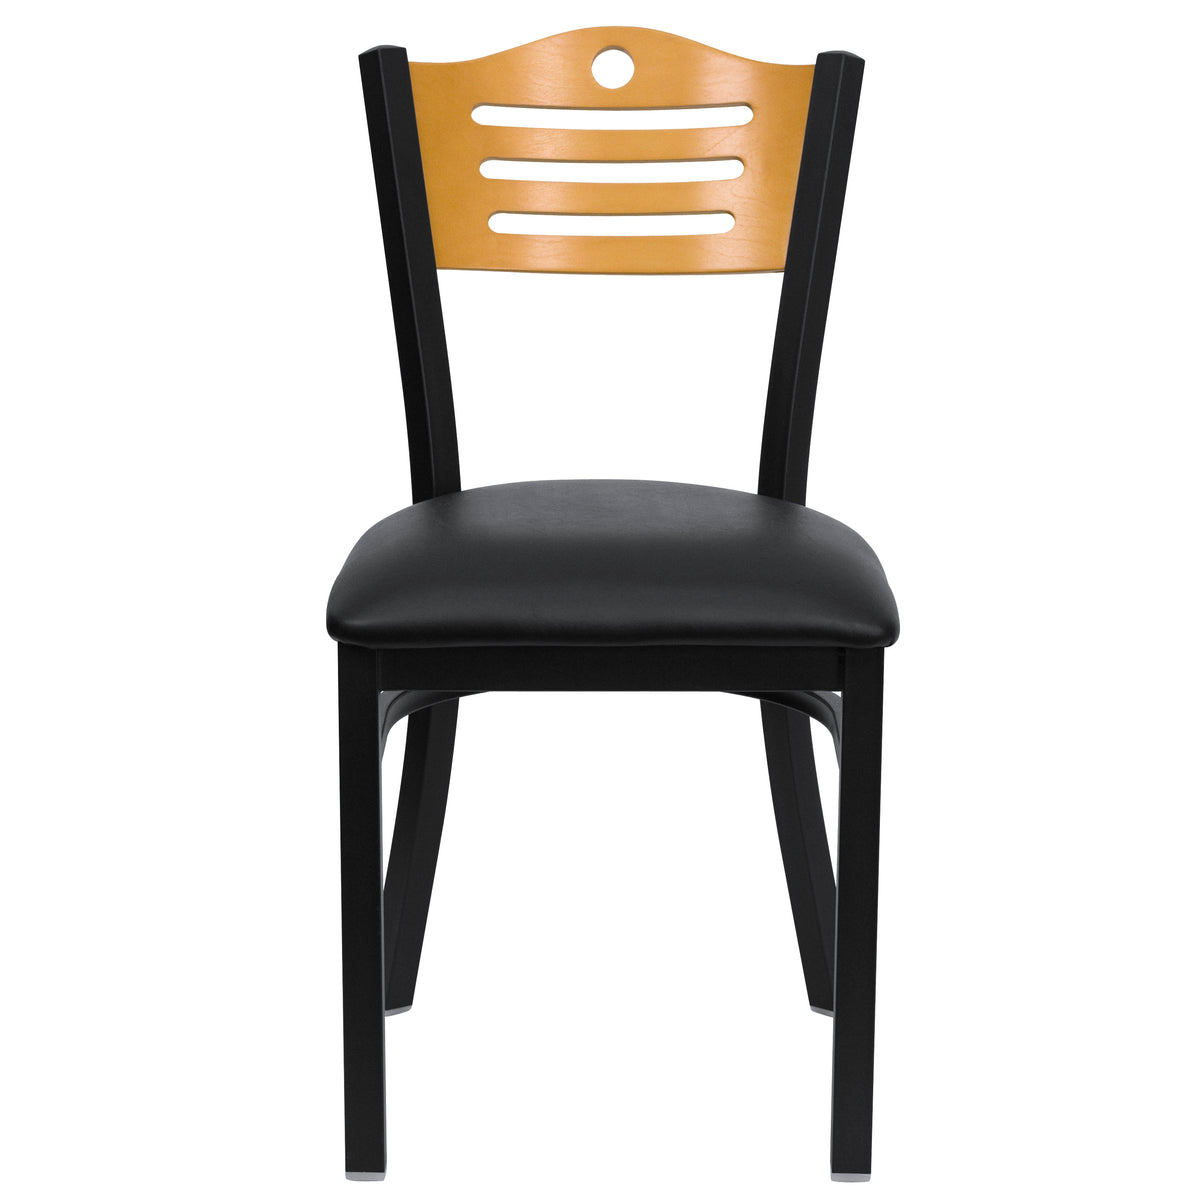 Natural Wood Back/Black Vinyl Seat/Black Metal Frame |#| Black Slat Back Metal Restaurant Chair - Natural Wood Back, Black Vinyl Seat